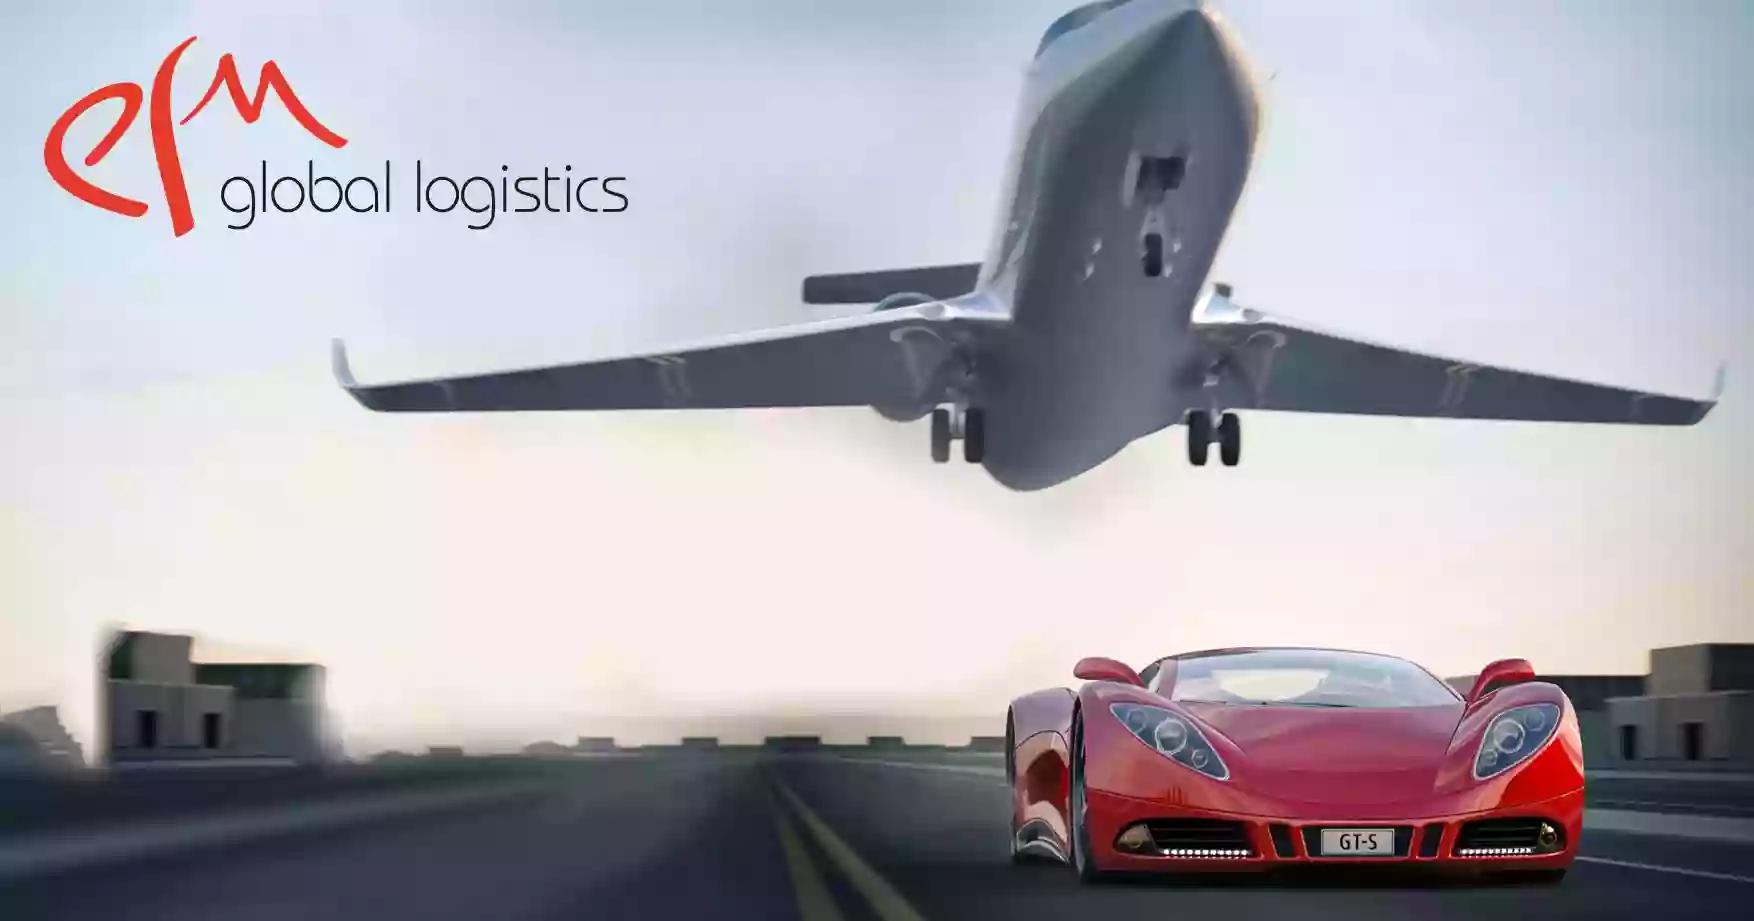 E F M Global Logistics